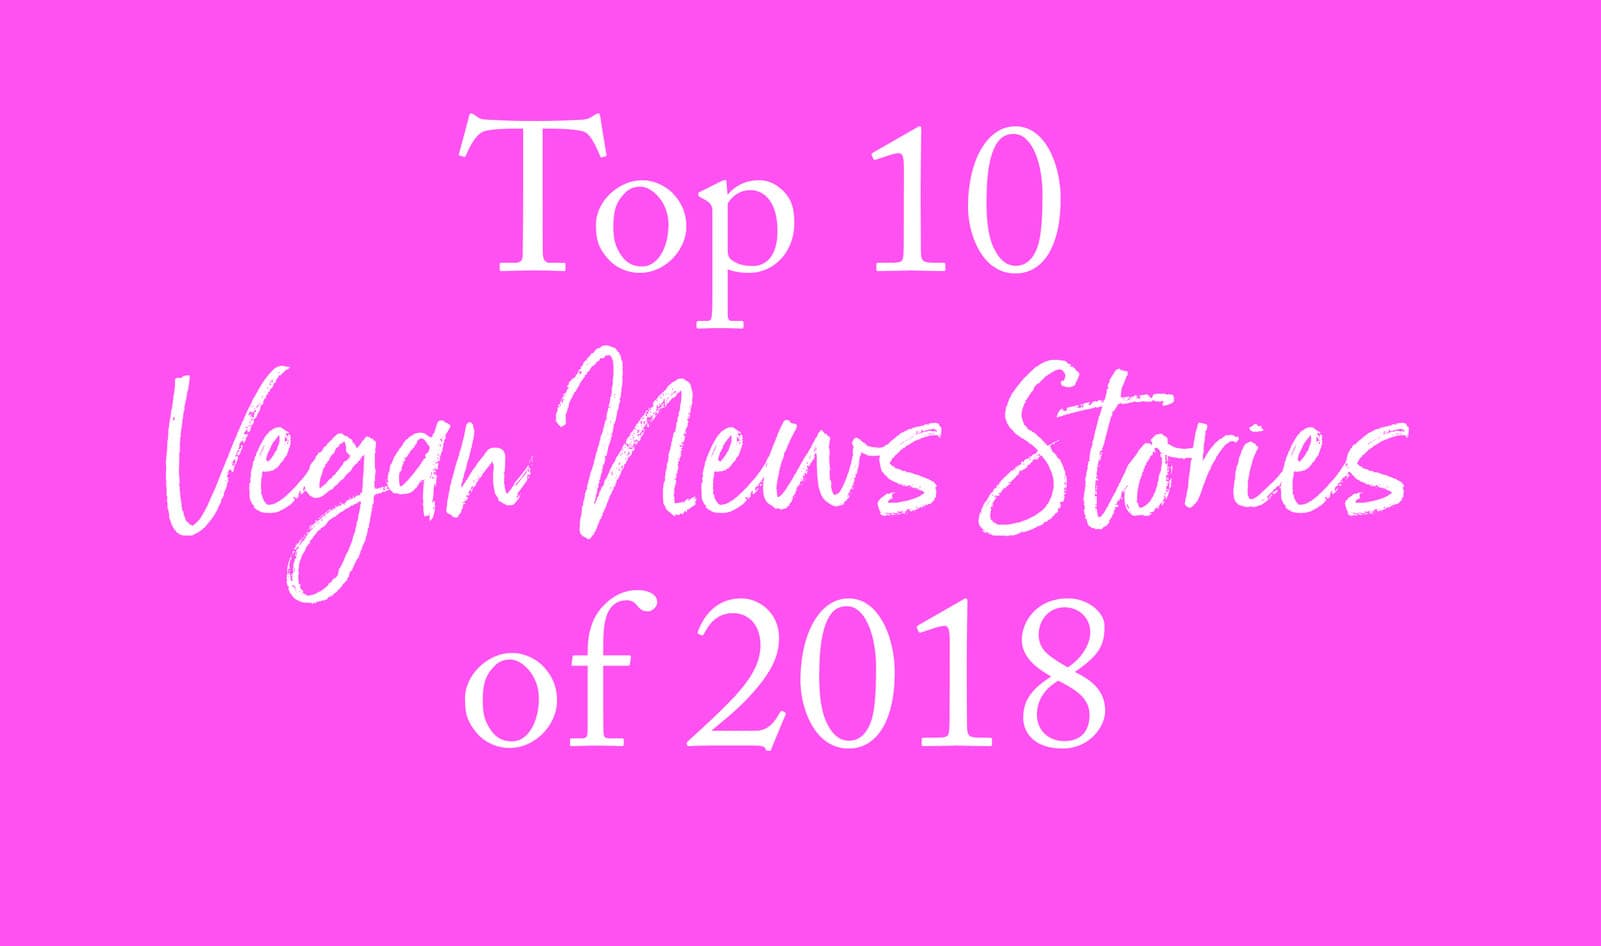 Top 10 Vegan News Stories of 2018